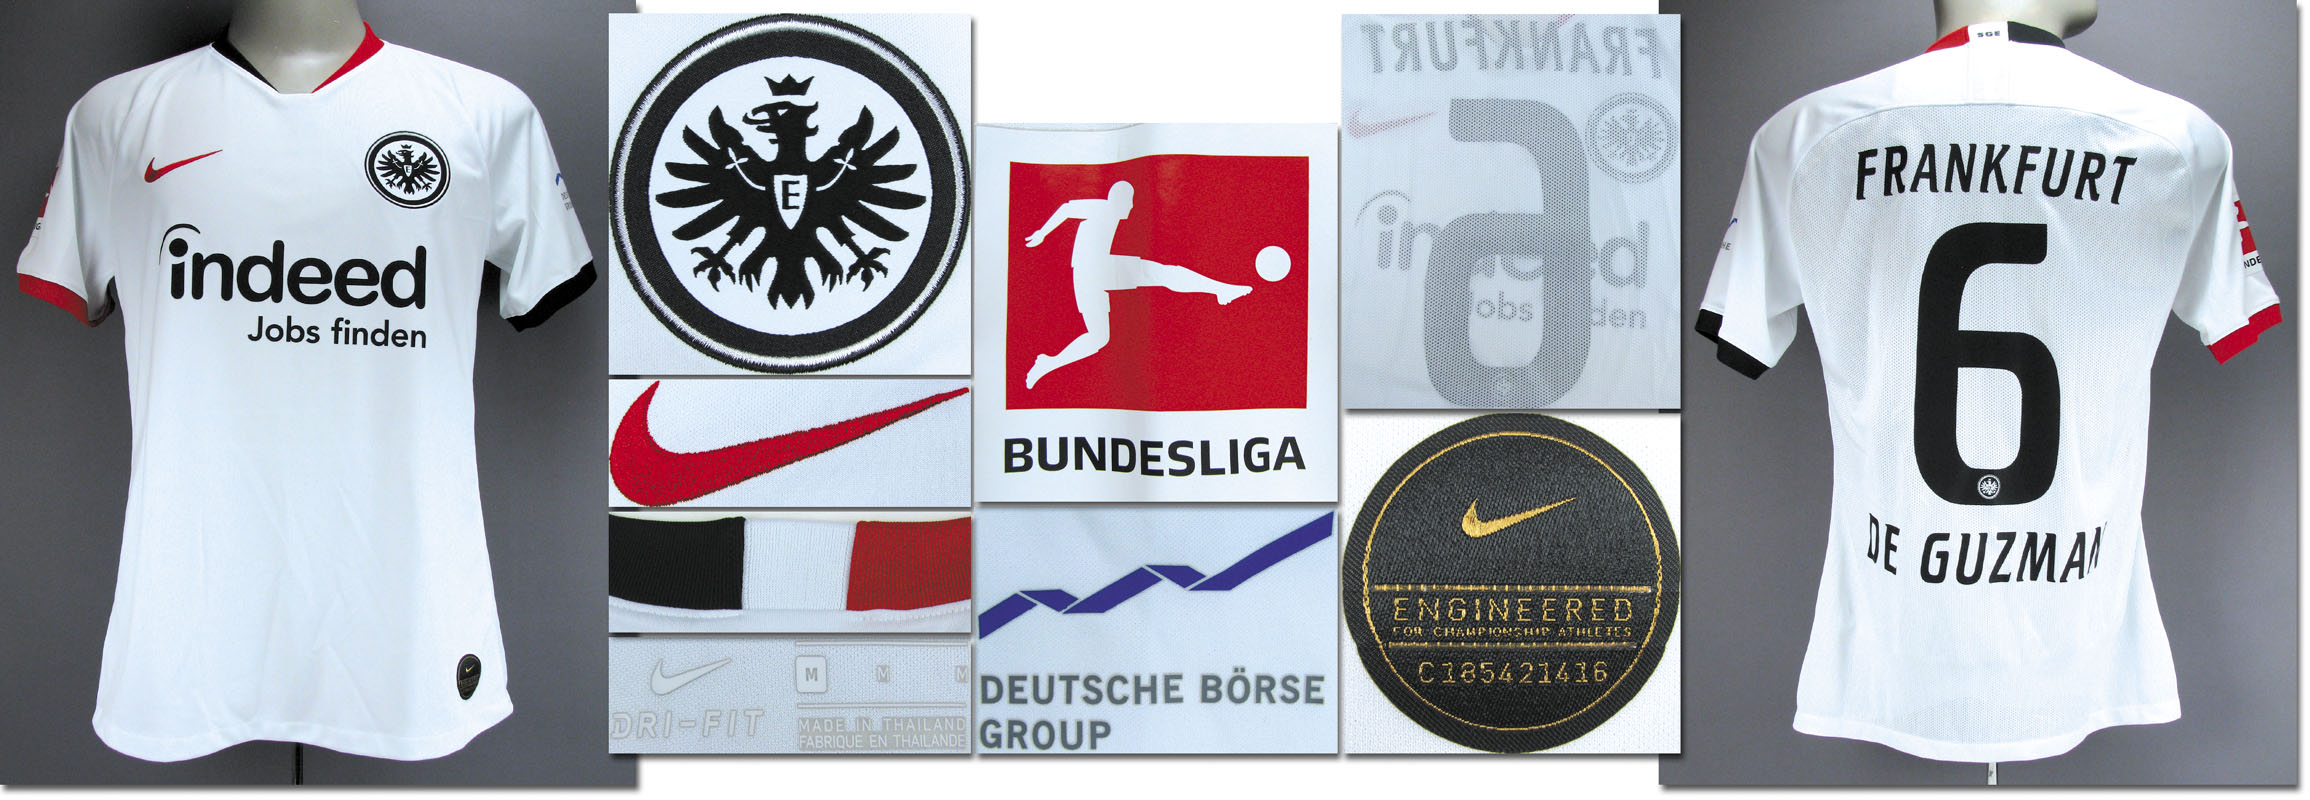 Eintracht Frankfurt Deutsche Börse Sponsor Patch Logo Badge wie Matchworn Trikot 